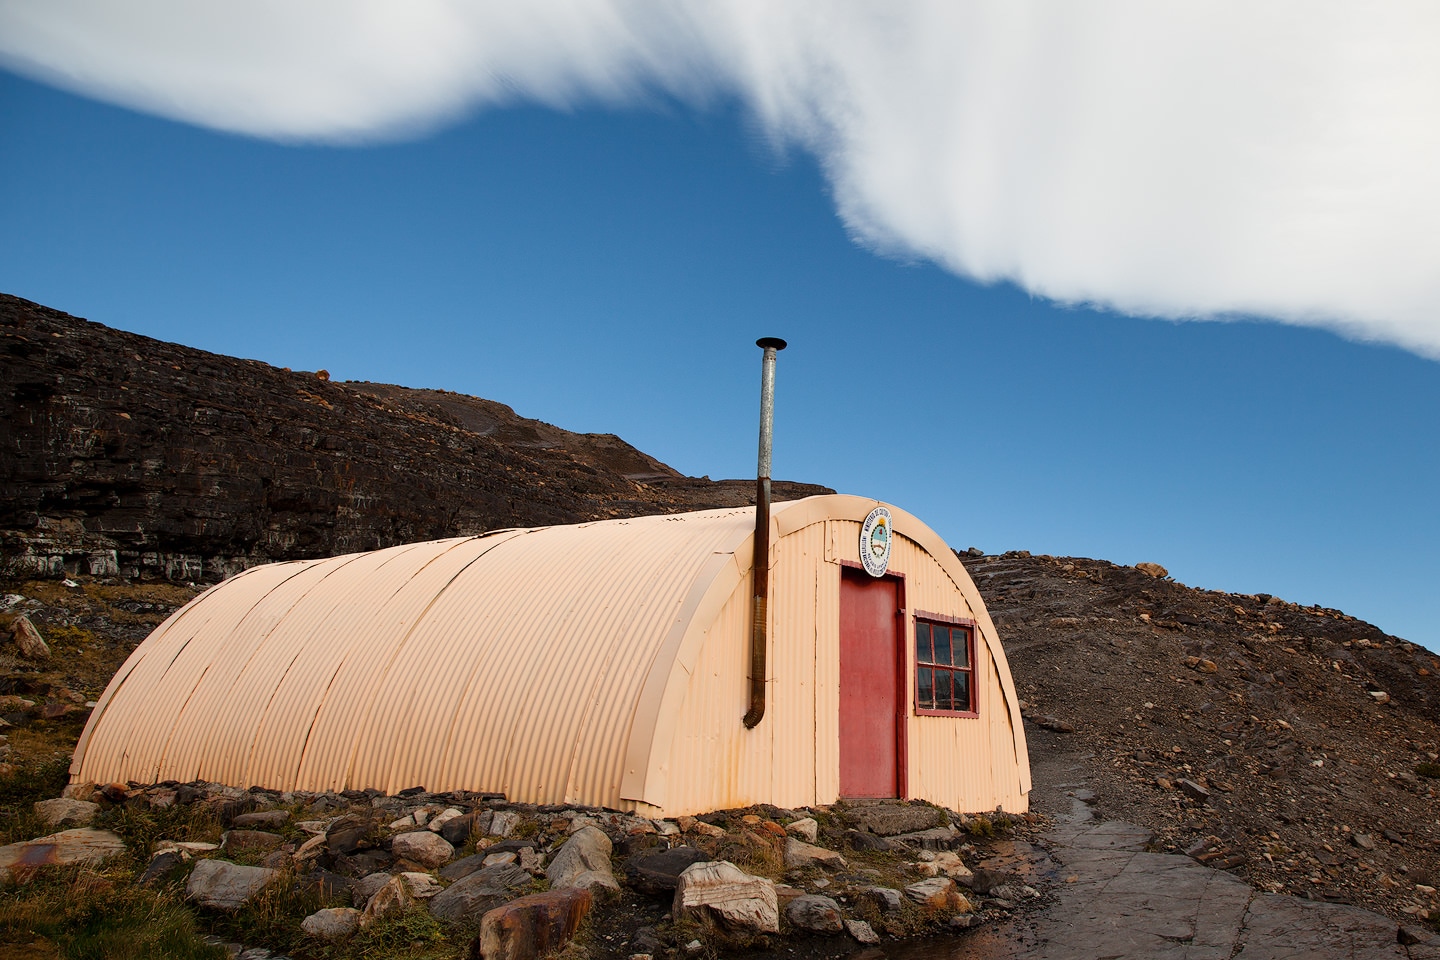 Expedition shelter in Parque Nacional los Glaciares